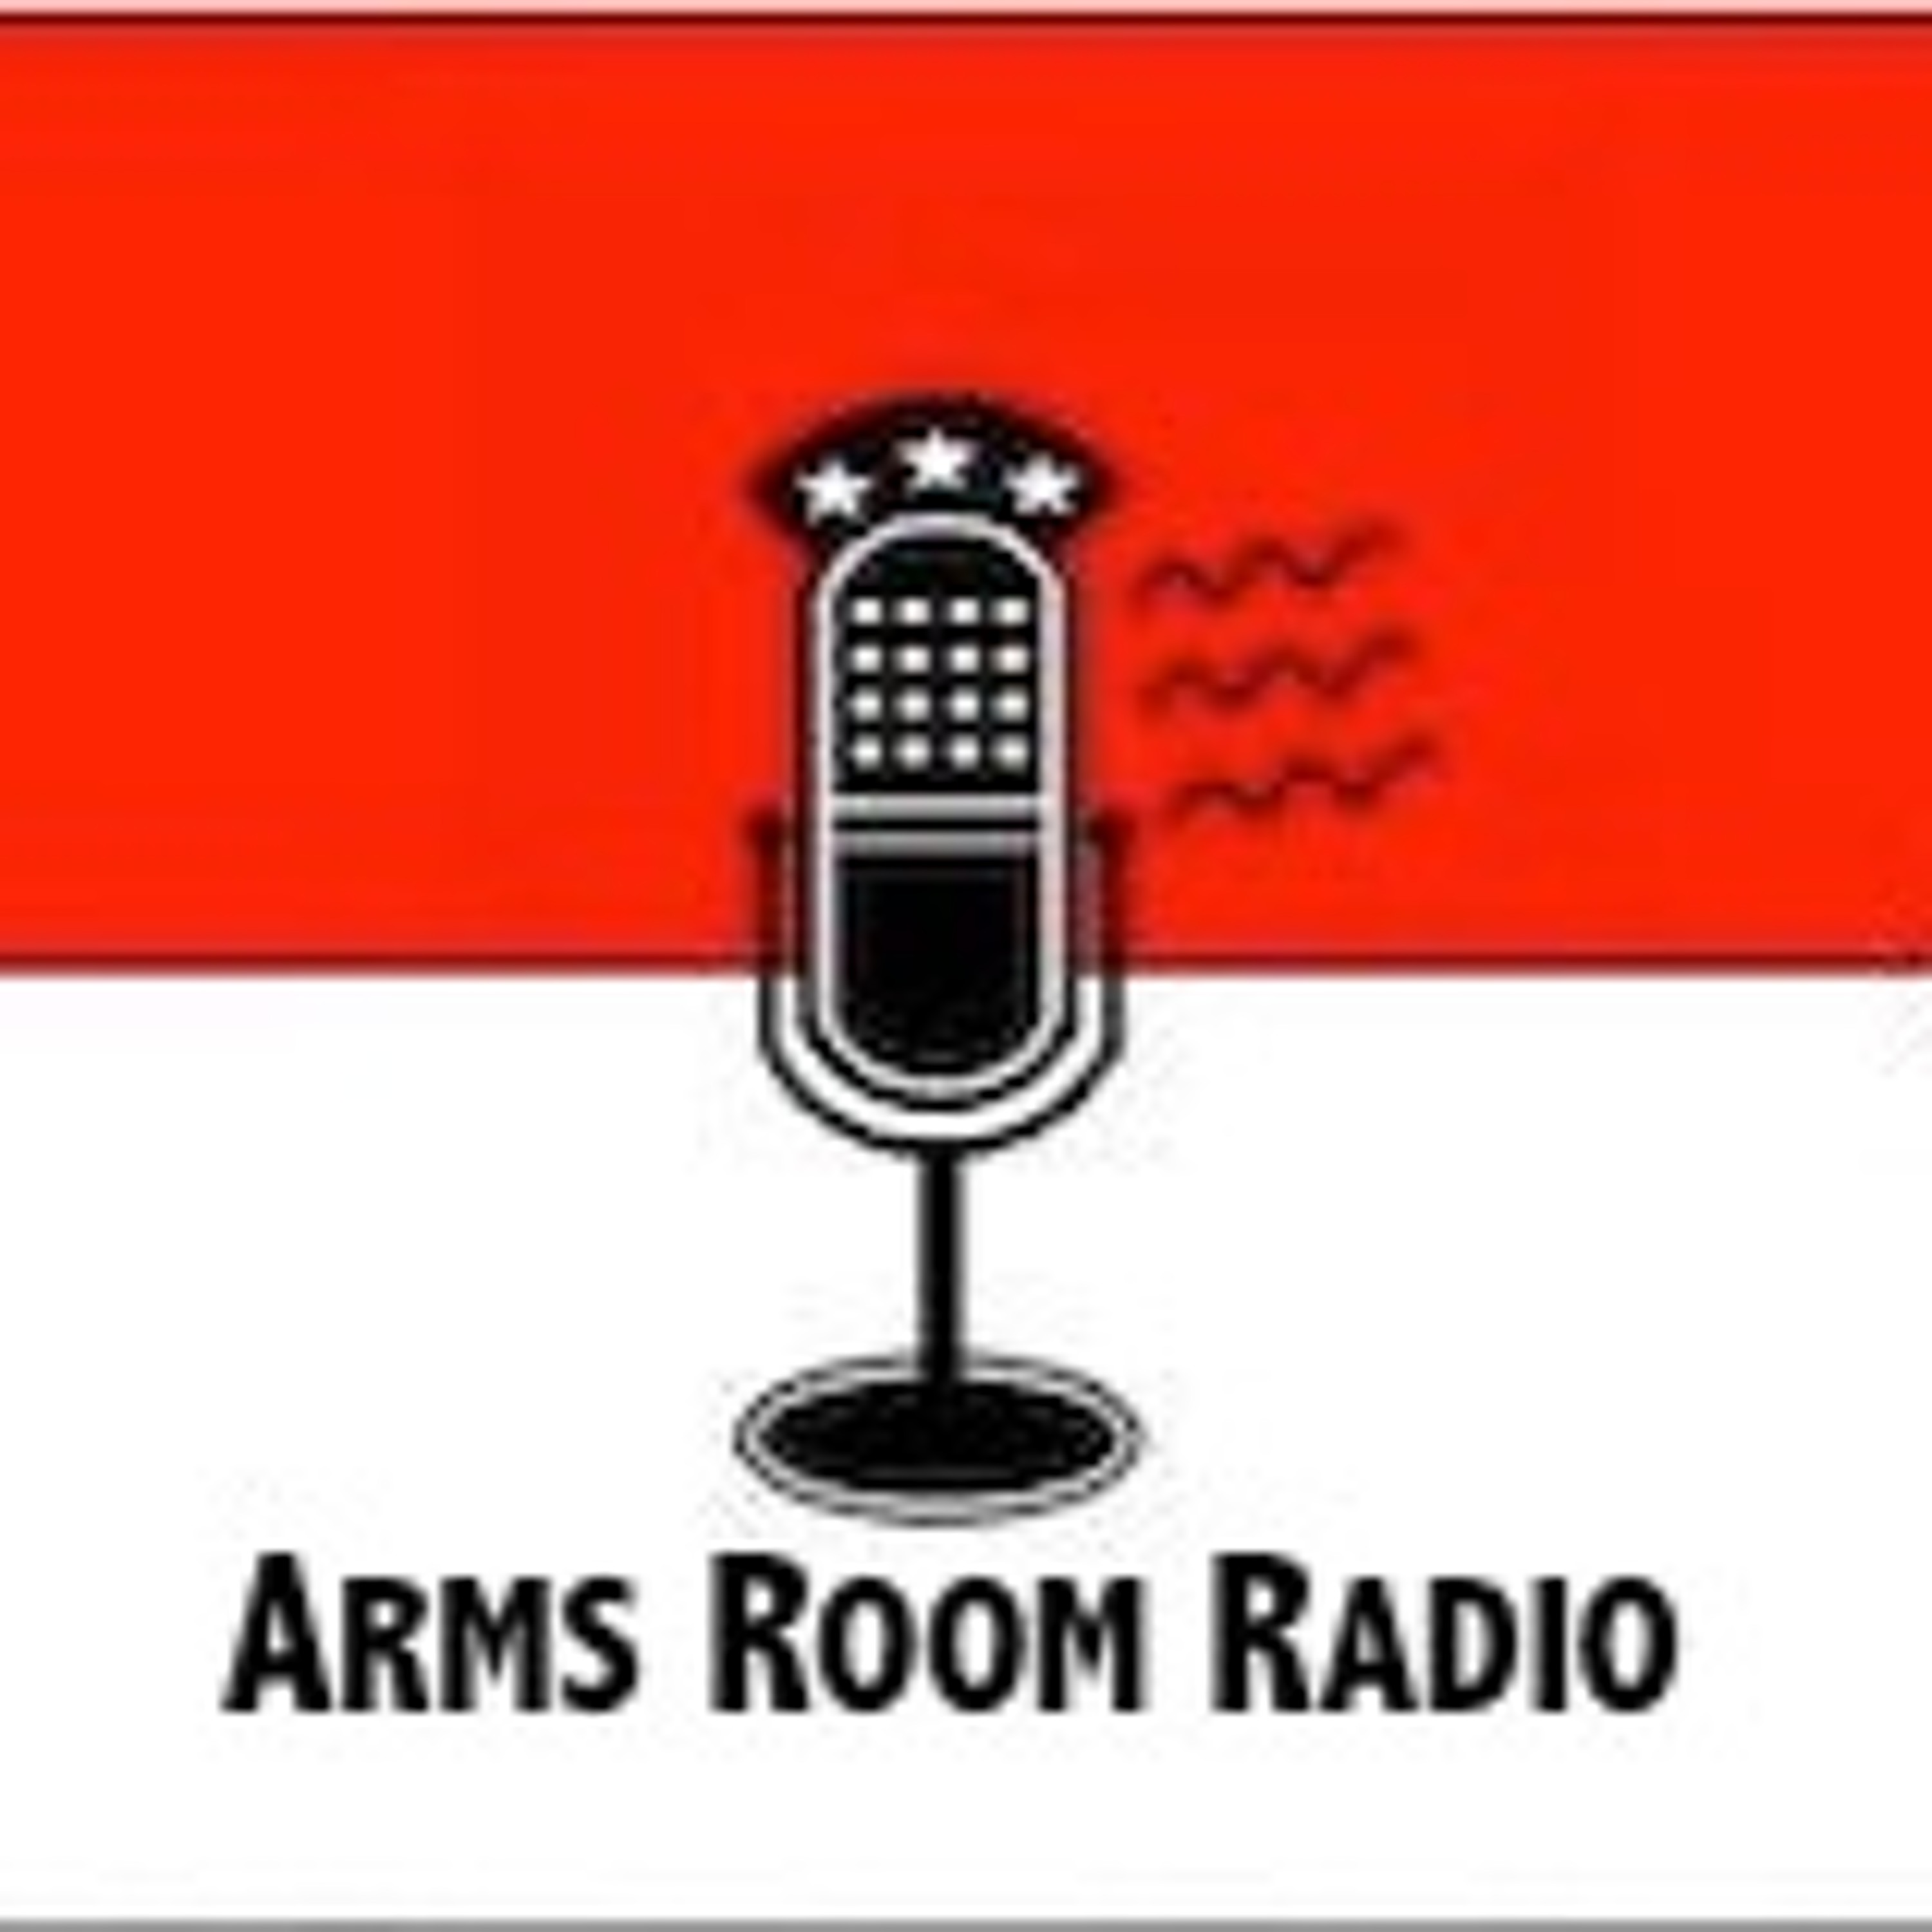 ArmsRoomRadio 09.12.20 Midsize Carry Guns, NY and NJ Updates